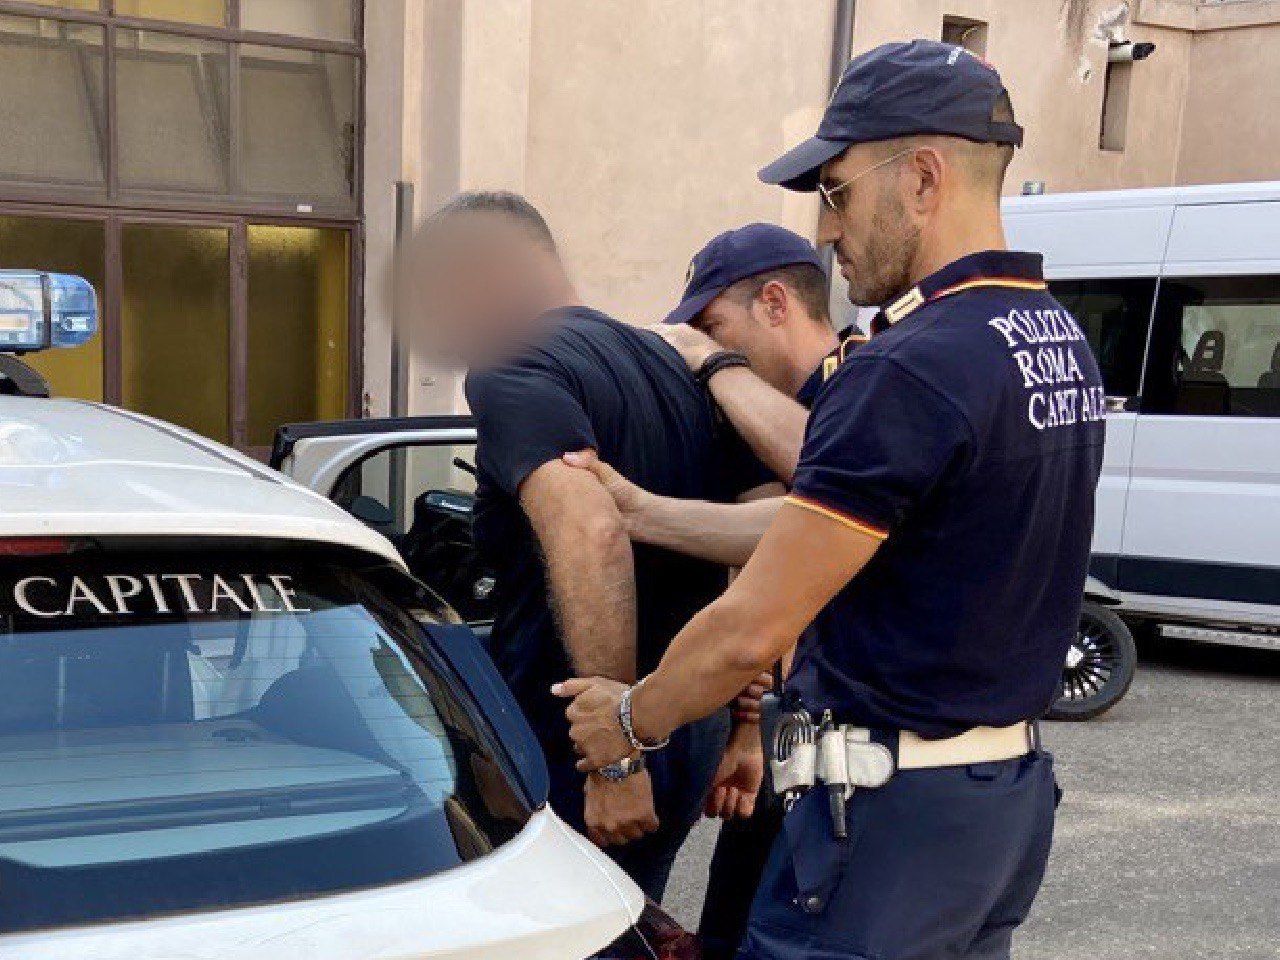 arresto polizia locale al centro Commerciale Roma Est